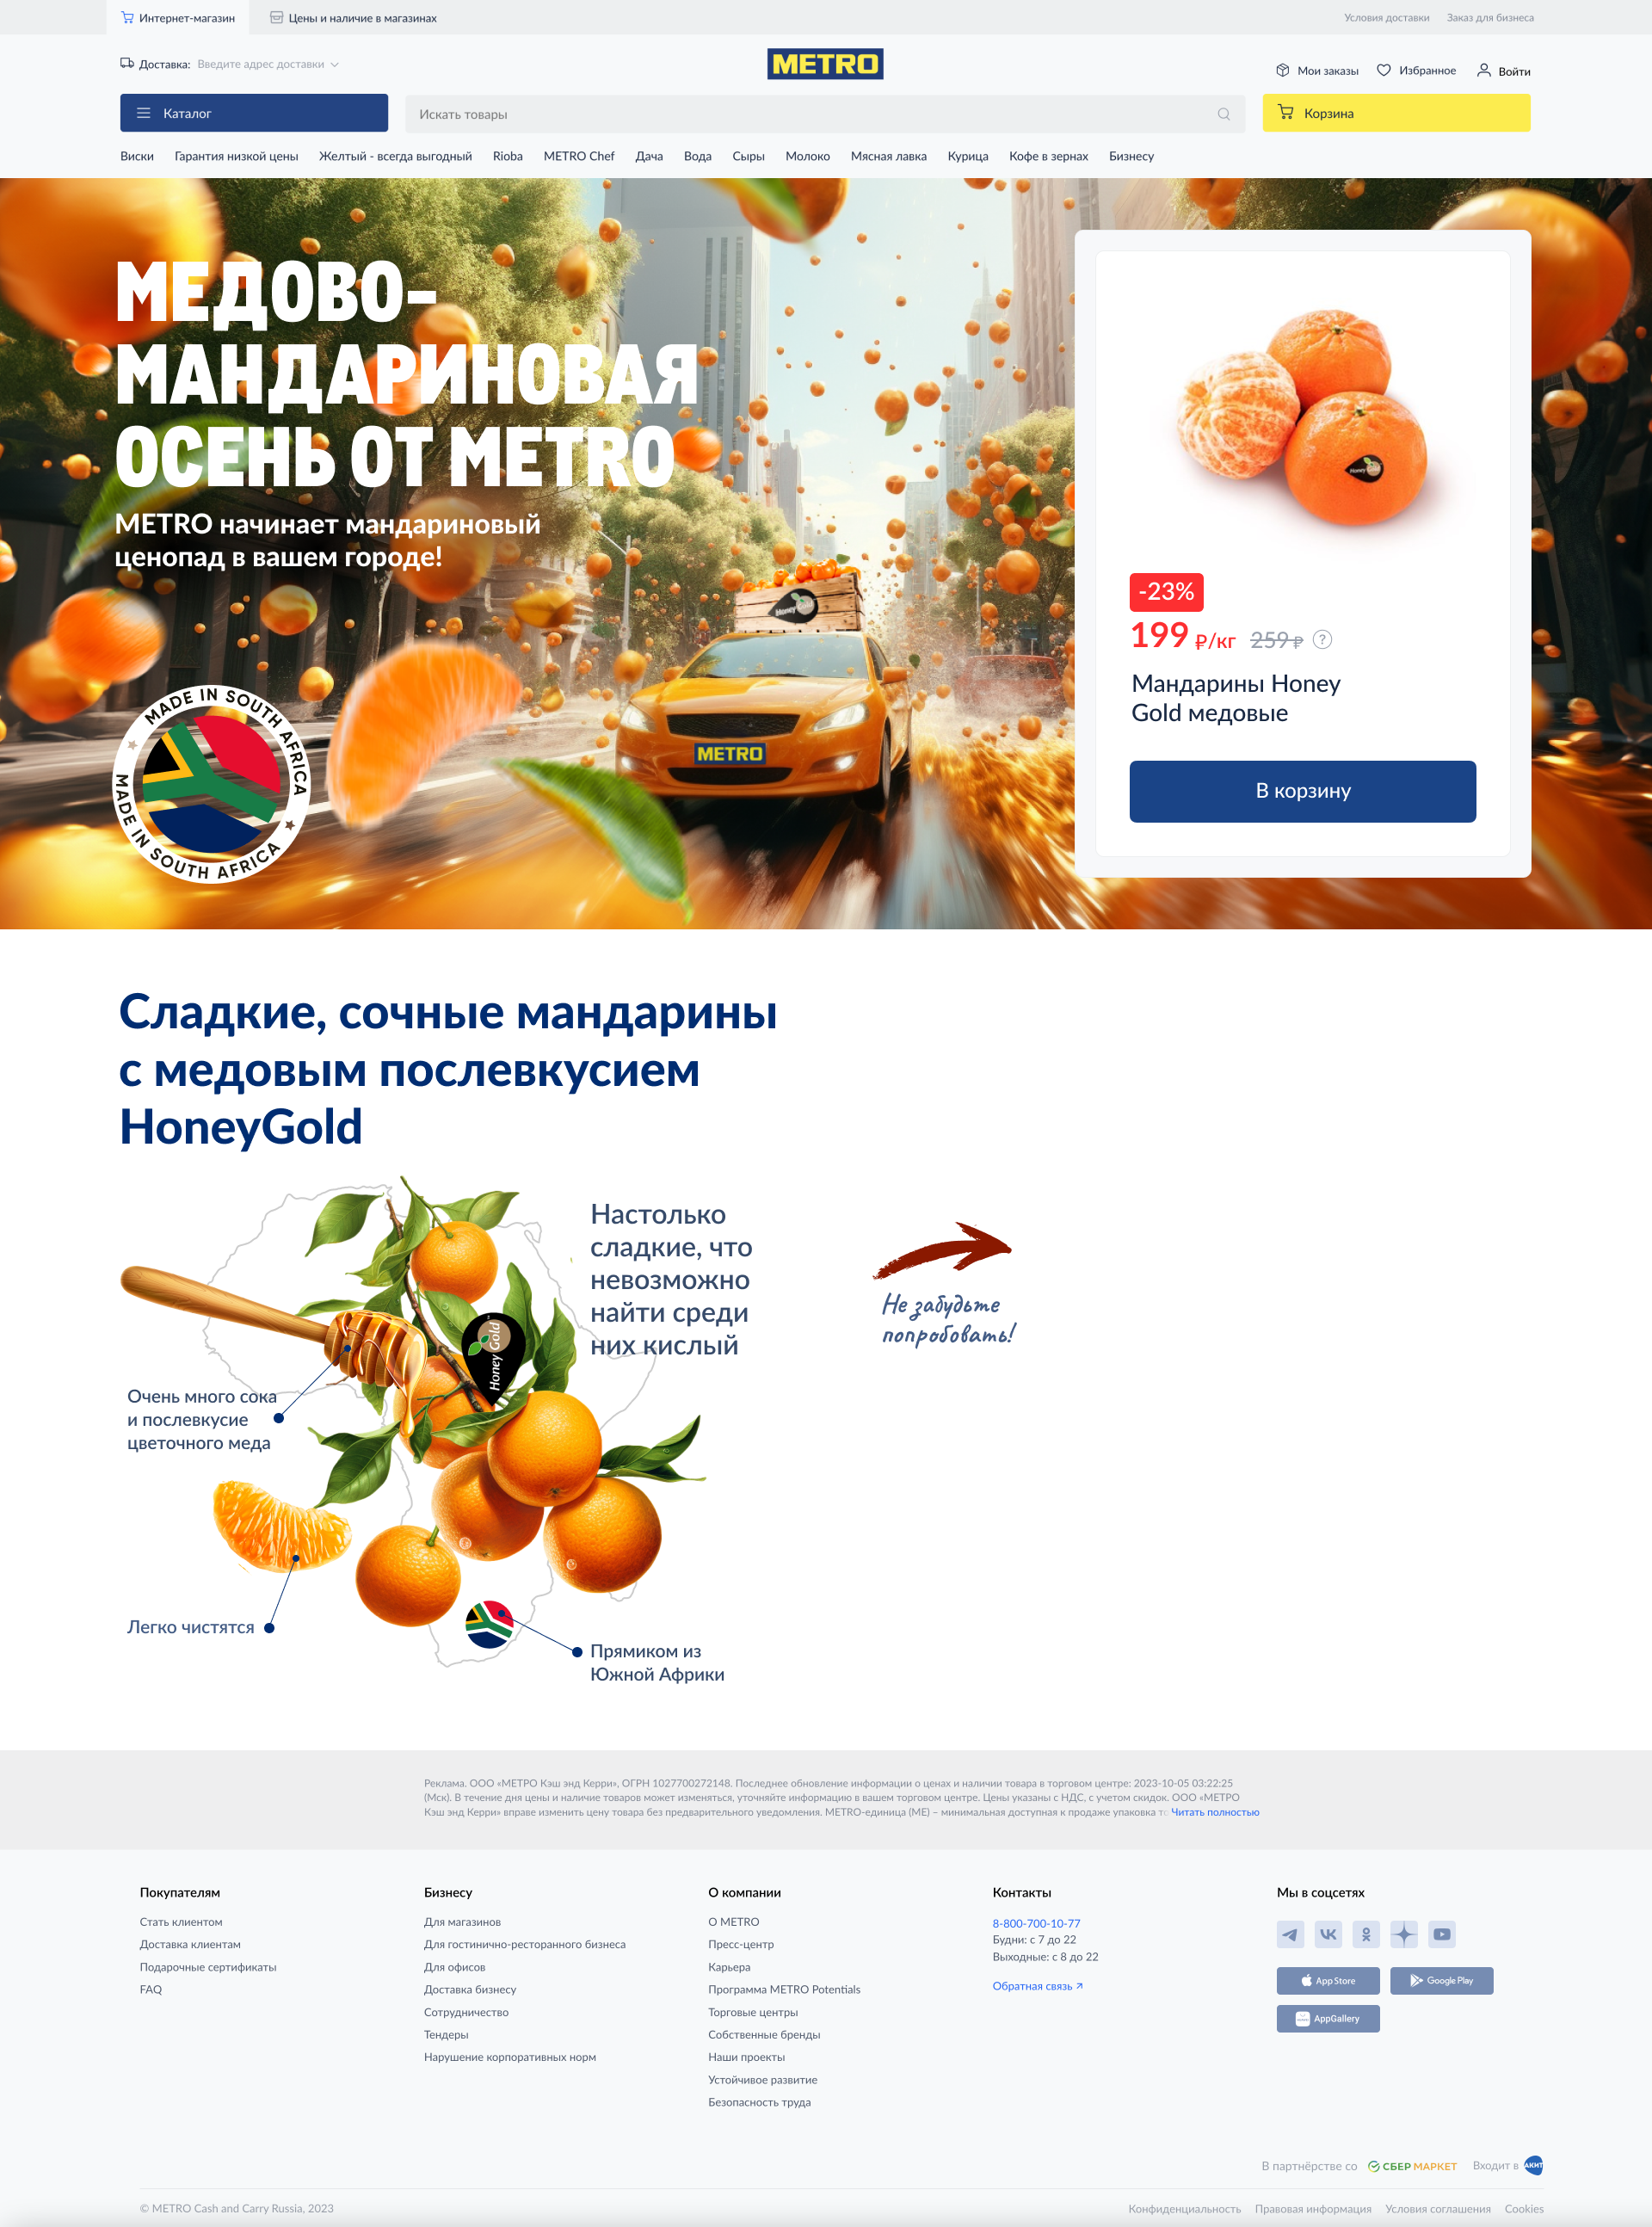 Эскиз проекта Медово-мандариновая осень METRO